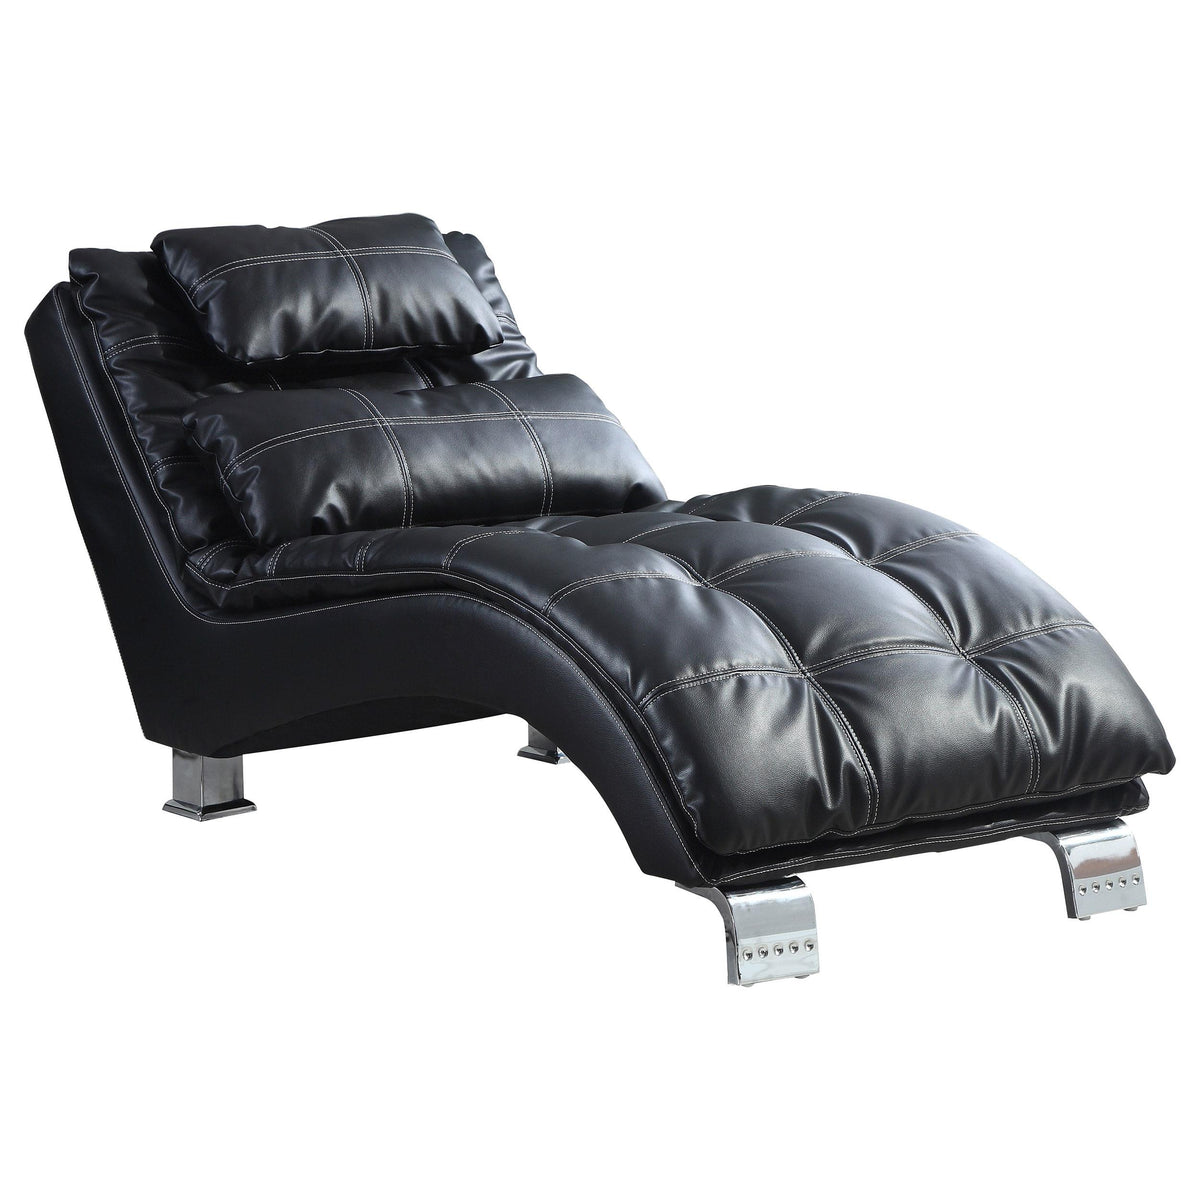 Dilleston Upholstered Chaise Black Dilleston Upholstered Chaise Black Half Price Furniture